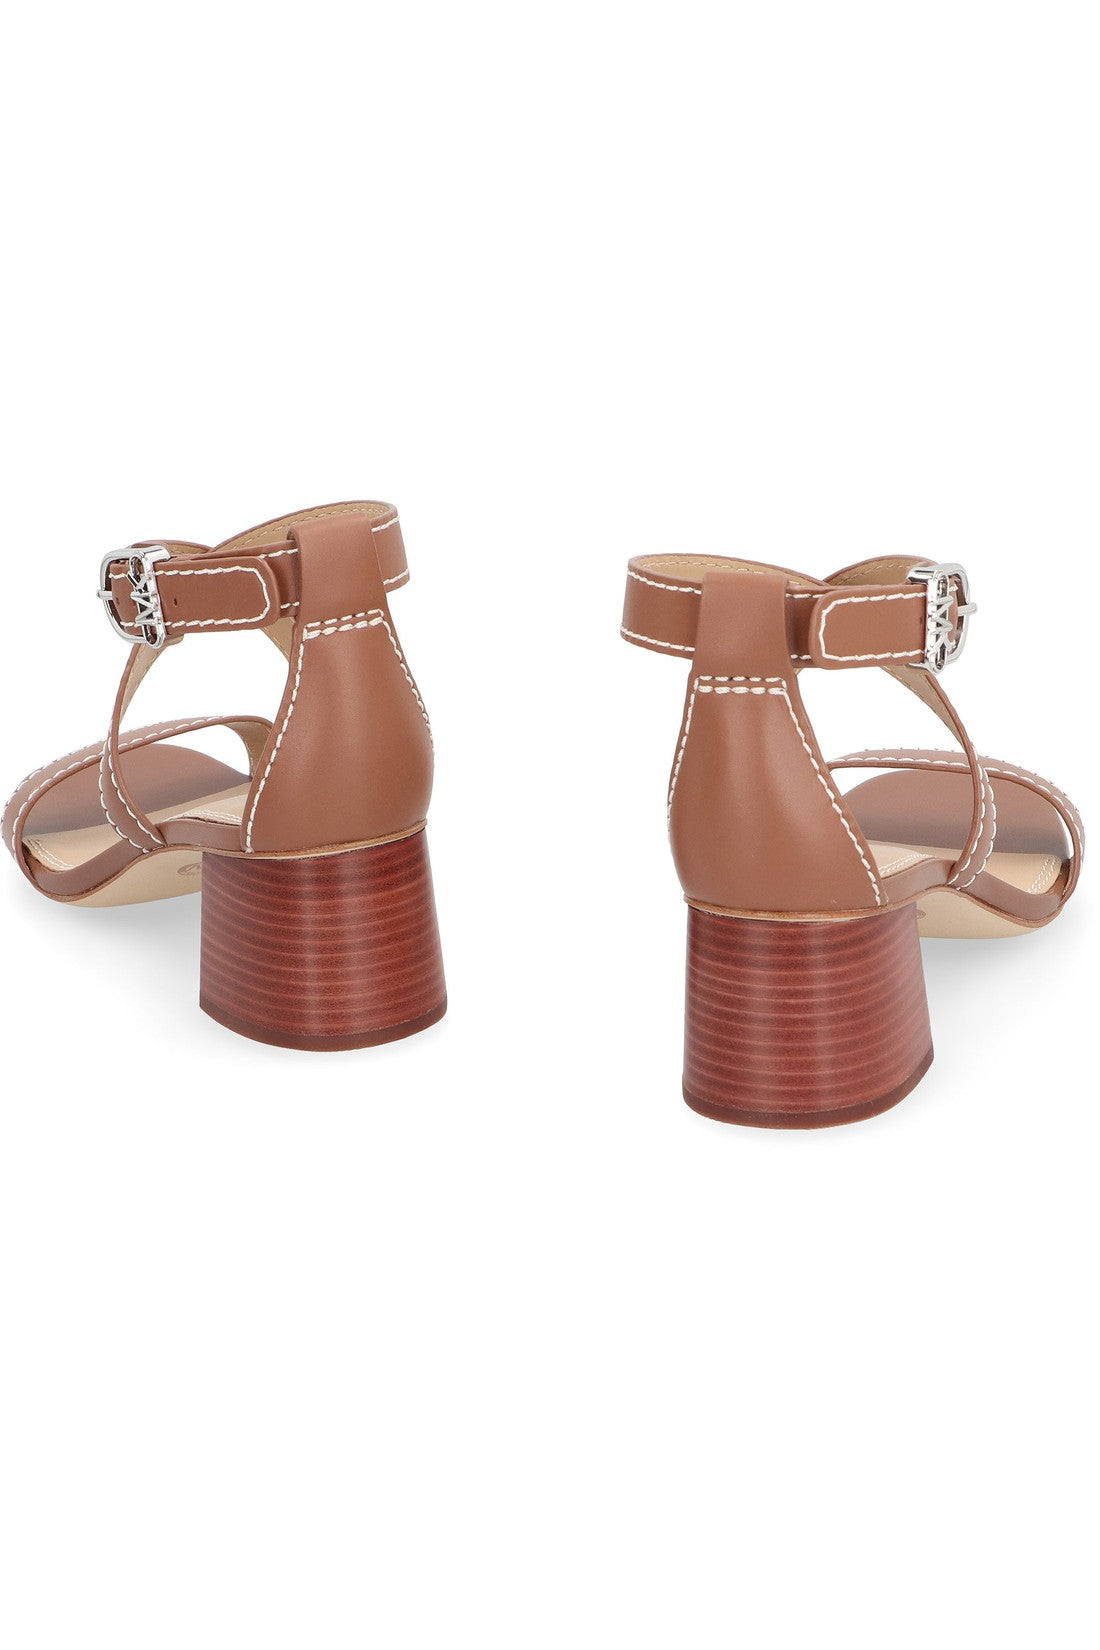 MICHAEL MICHAEL KORS-OUTLET-SALE-Ashton leather sandals-ARCHIVIST